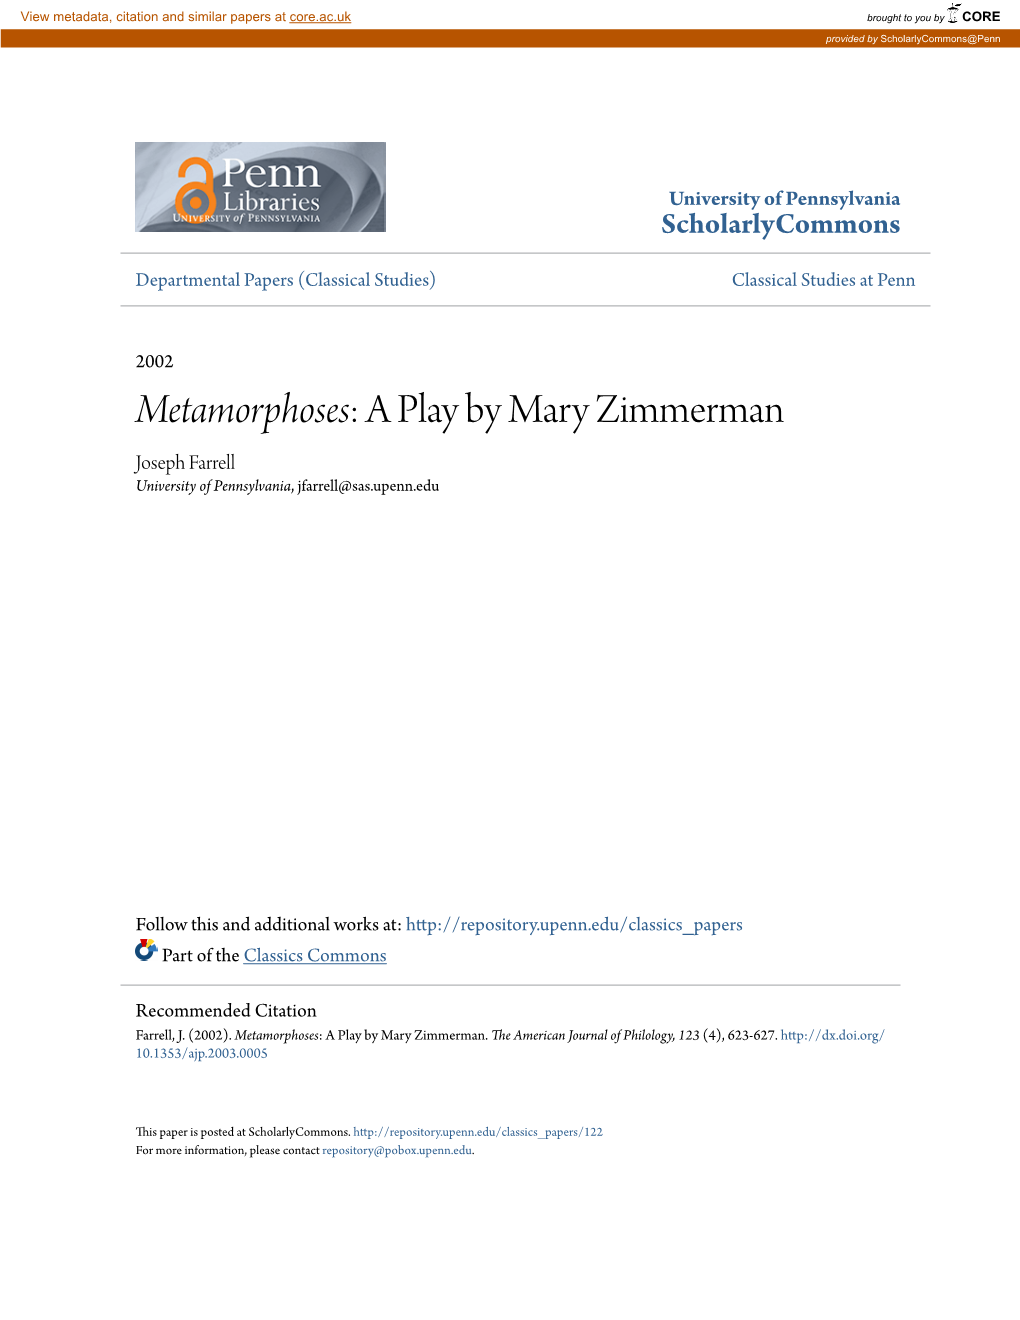 Metamorphoses: a Play by Mary Zimmerman Joseph Farrell University of Pennsylvania, Jfarrell@Sas.Upenn.Edu